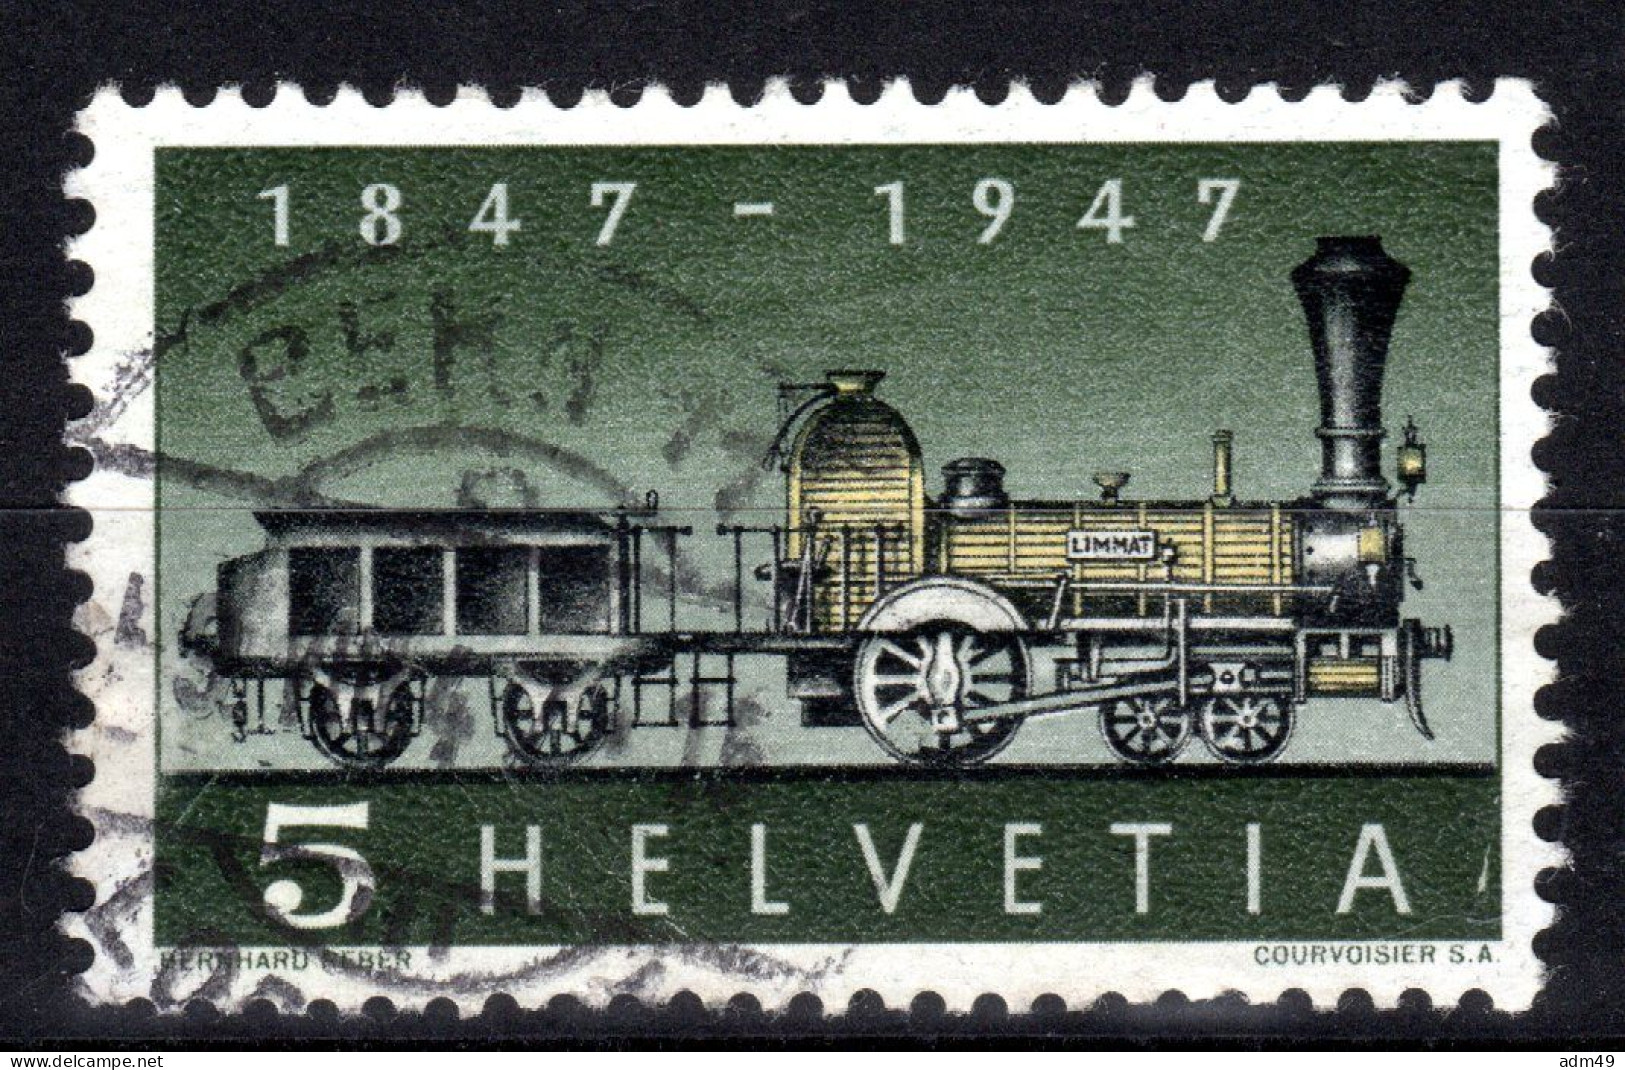 SCHWEIZ ABARTEN, 1947 Erste Dampflokomotive, Fehlende Speiche, Gestempelt - Errores & Curiosidades